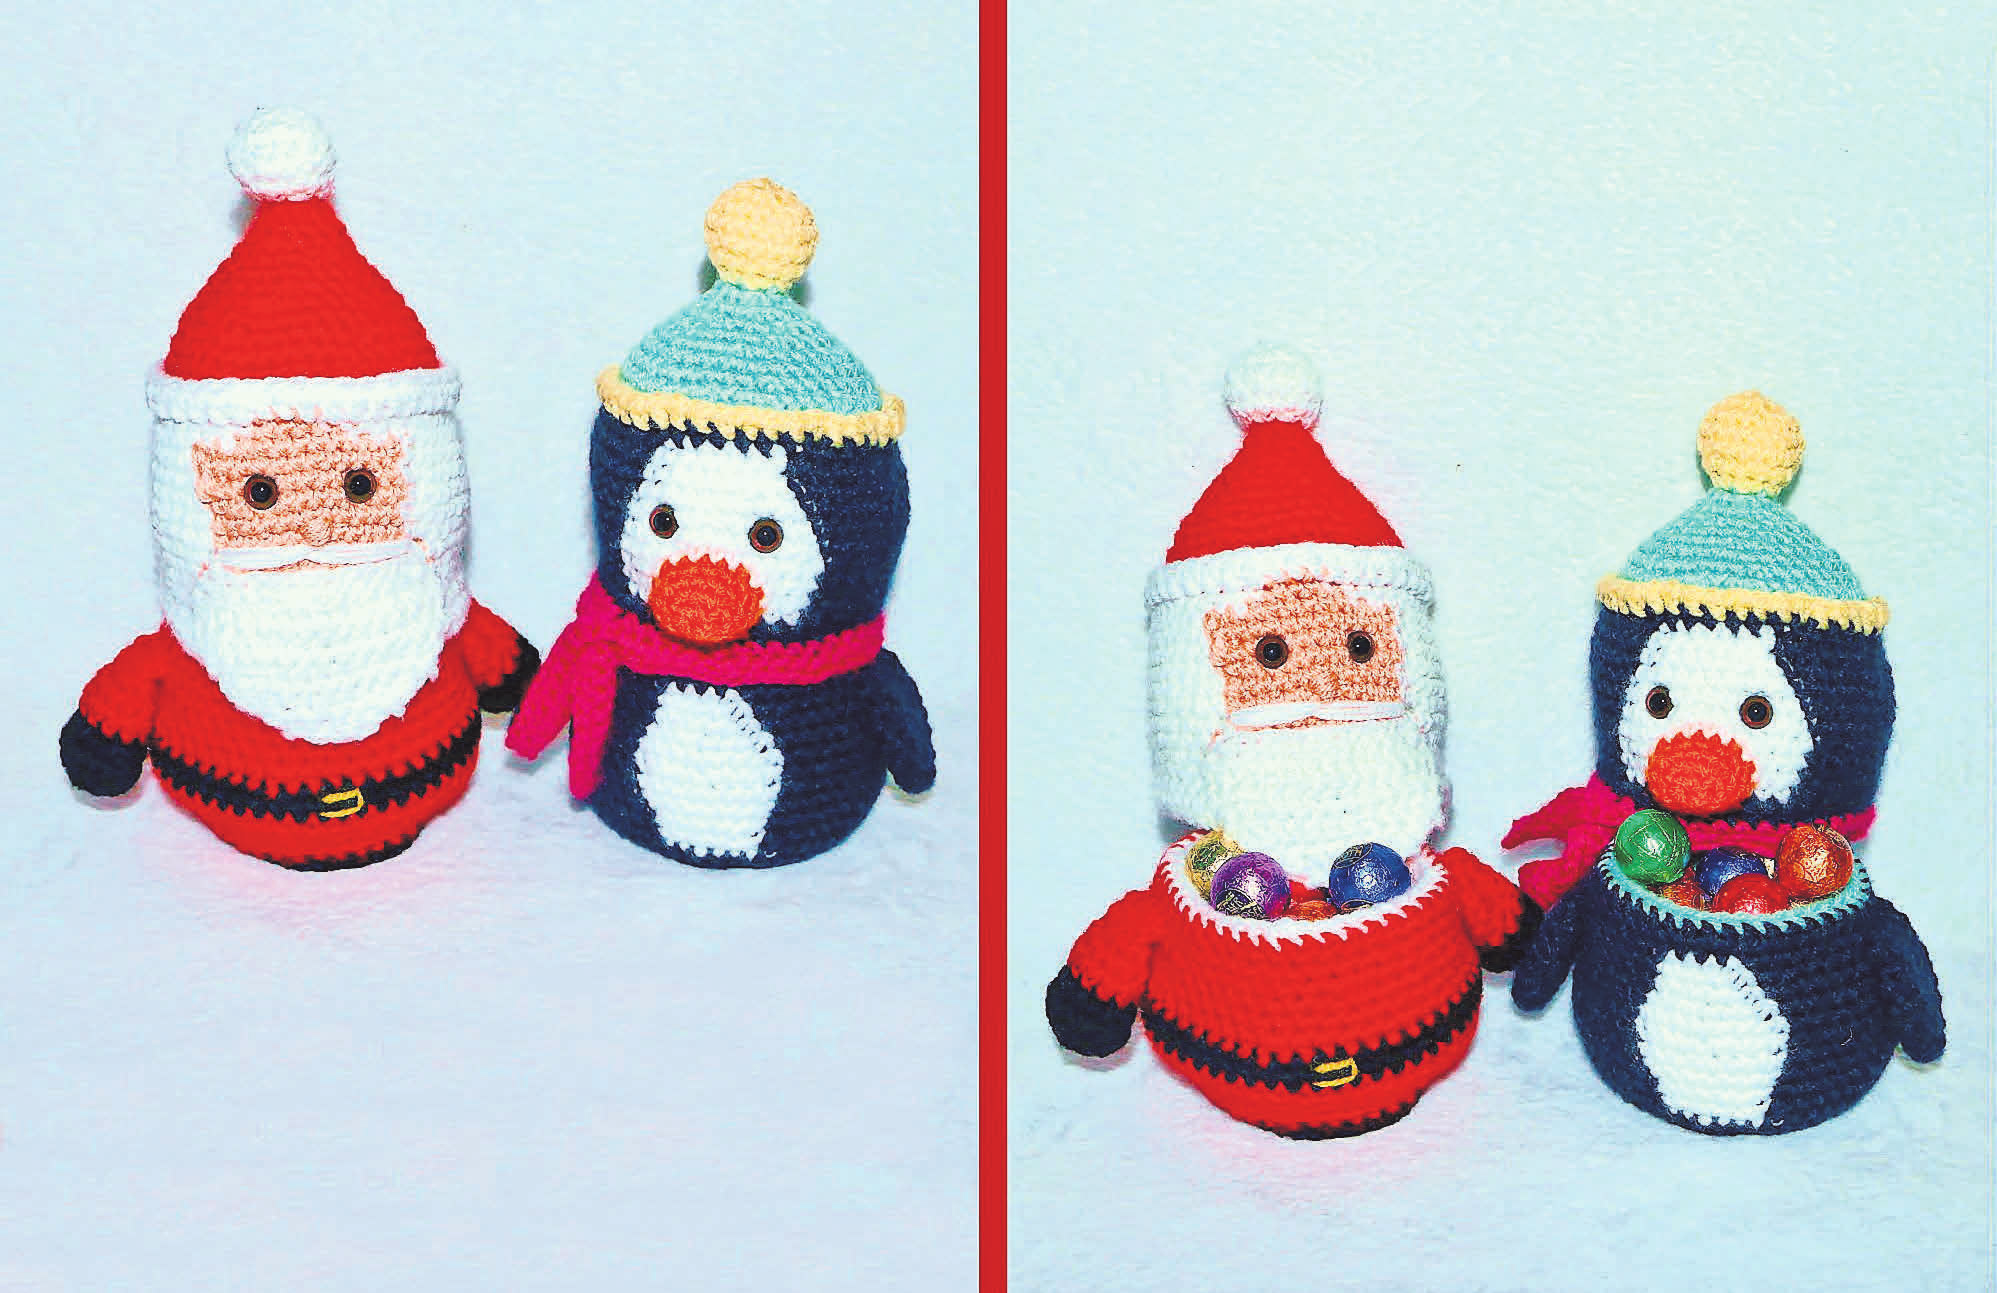 Ein Kunstwerk von Christina Knuth: Ich liebe Häkeleien „mit Pfiff“: Der Weihnachtsmann und der Pinguin verbergen in ihrem Inneren eine süße Überraschung.